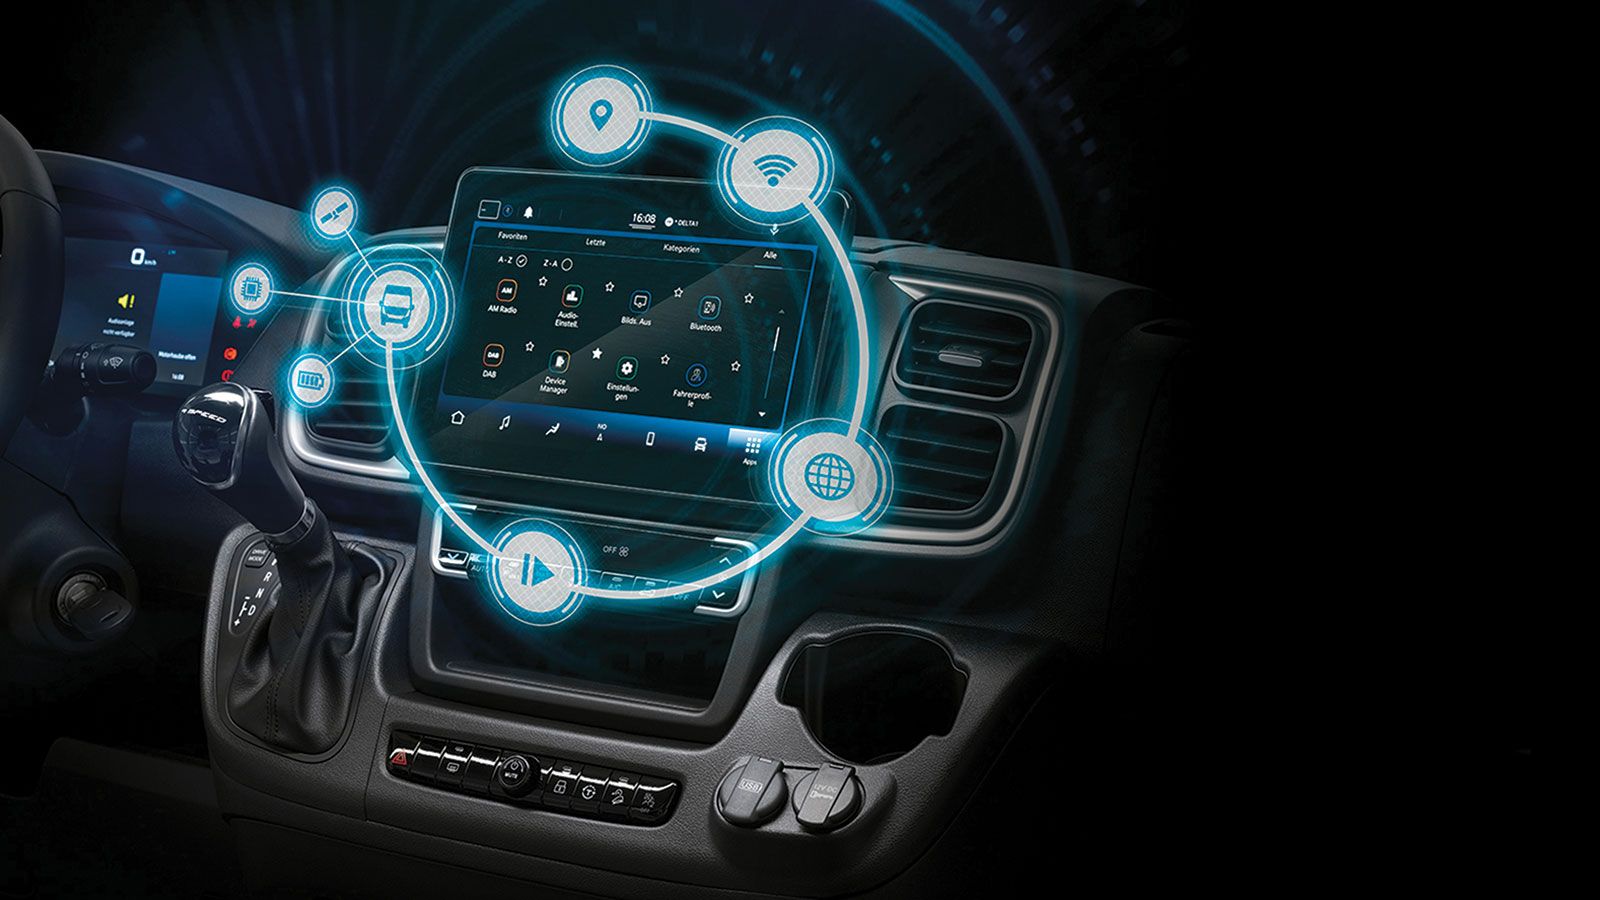 Δεδομένου ότι όλα τα οχήματα που διατίθενται με leasing είναι καινούργια, μπορείτε να εκμεταλλευτείτε όλες τις τεχνολογικές καινοτομίες που προσφέρει η σύγχρονη αυτοκίνηση.